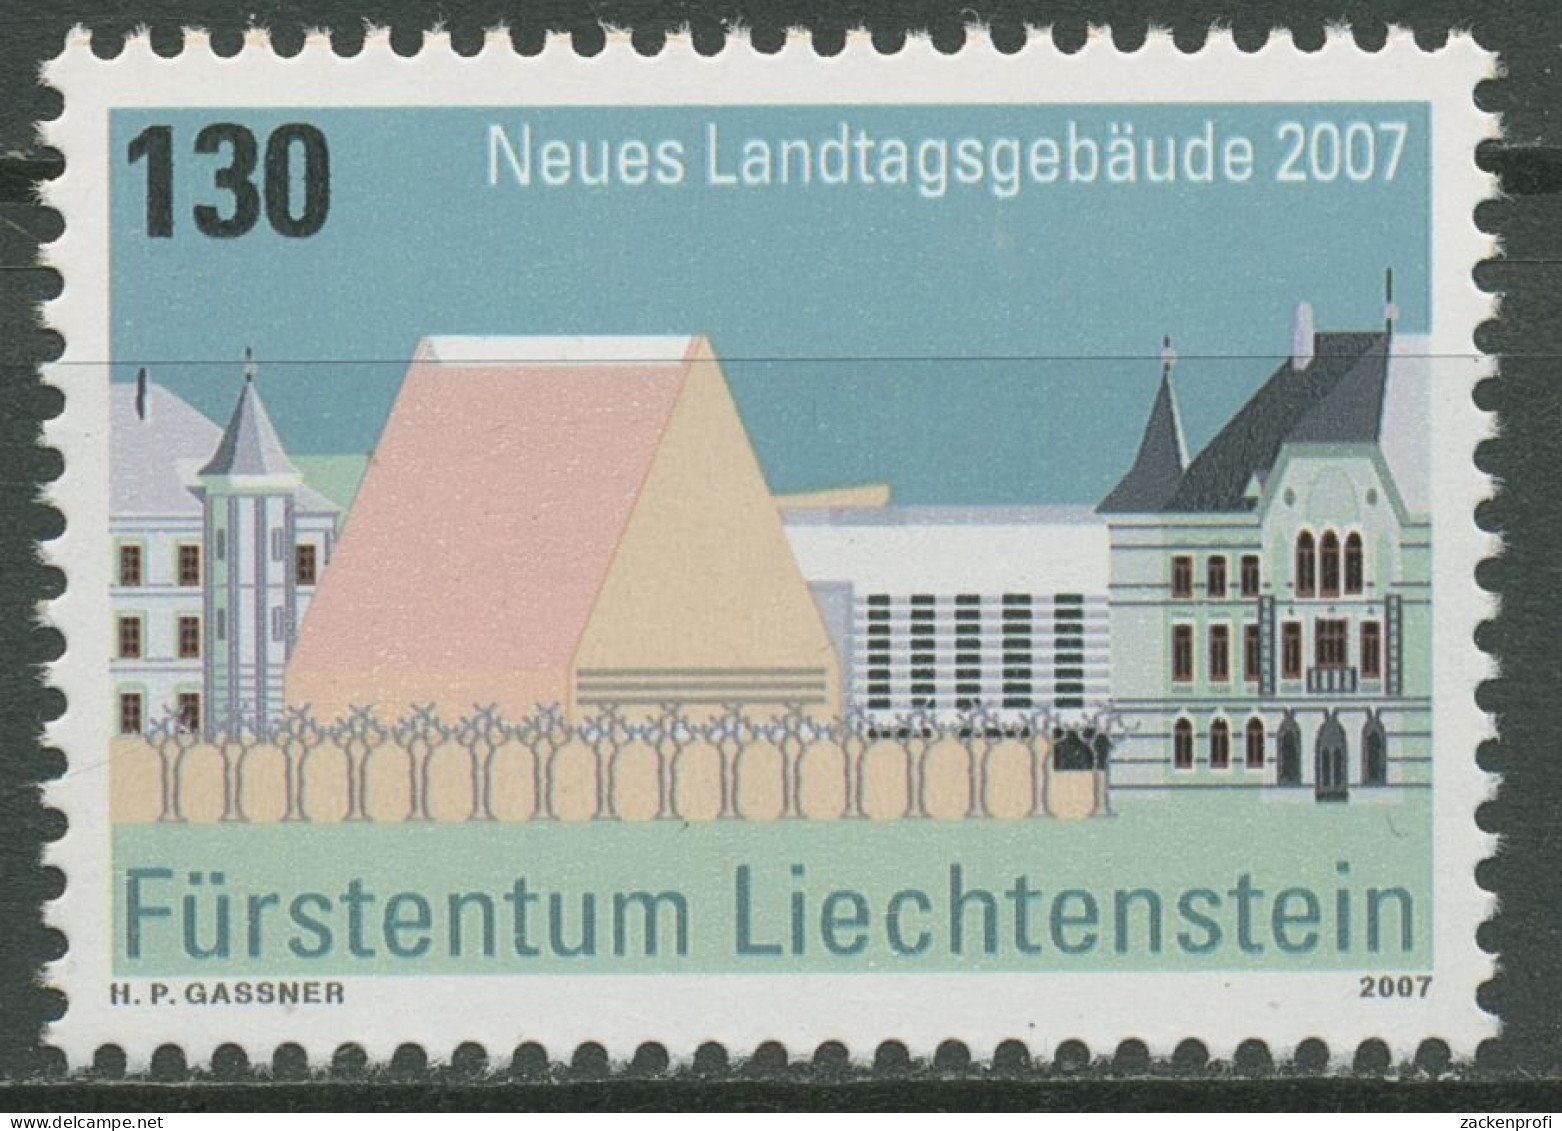 Liechtenstein 2007 Architektur Landtagsgebäude Vaduz 1469 Postfrisch - Unused Stamps